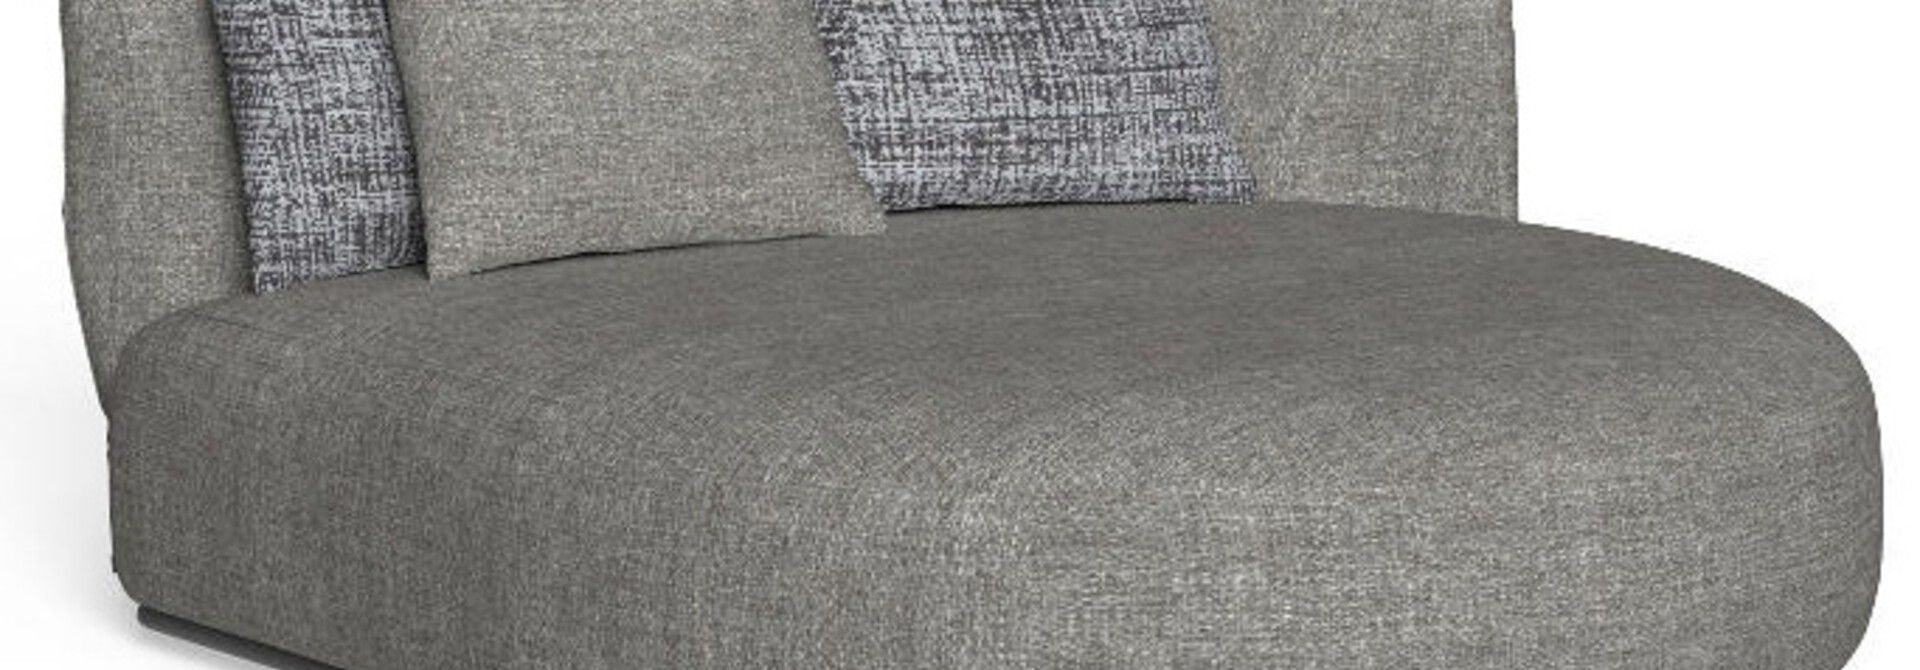 Sofa Scacco Drope SX Graphite & Dark Gray